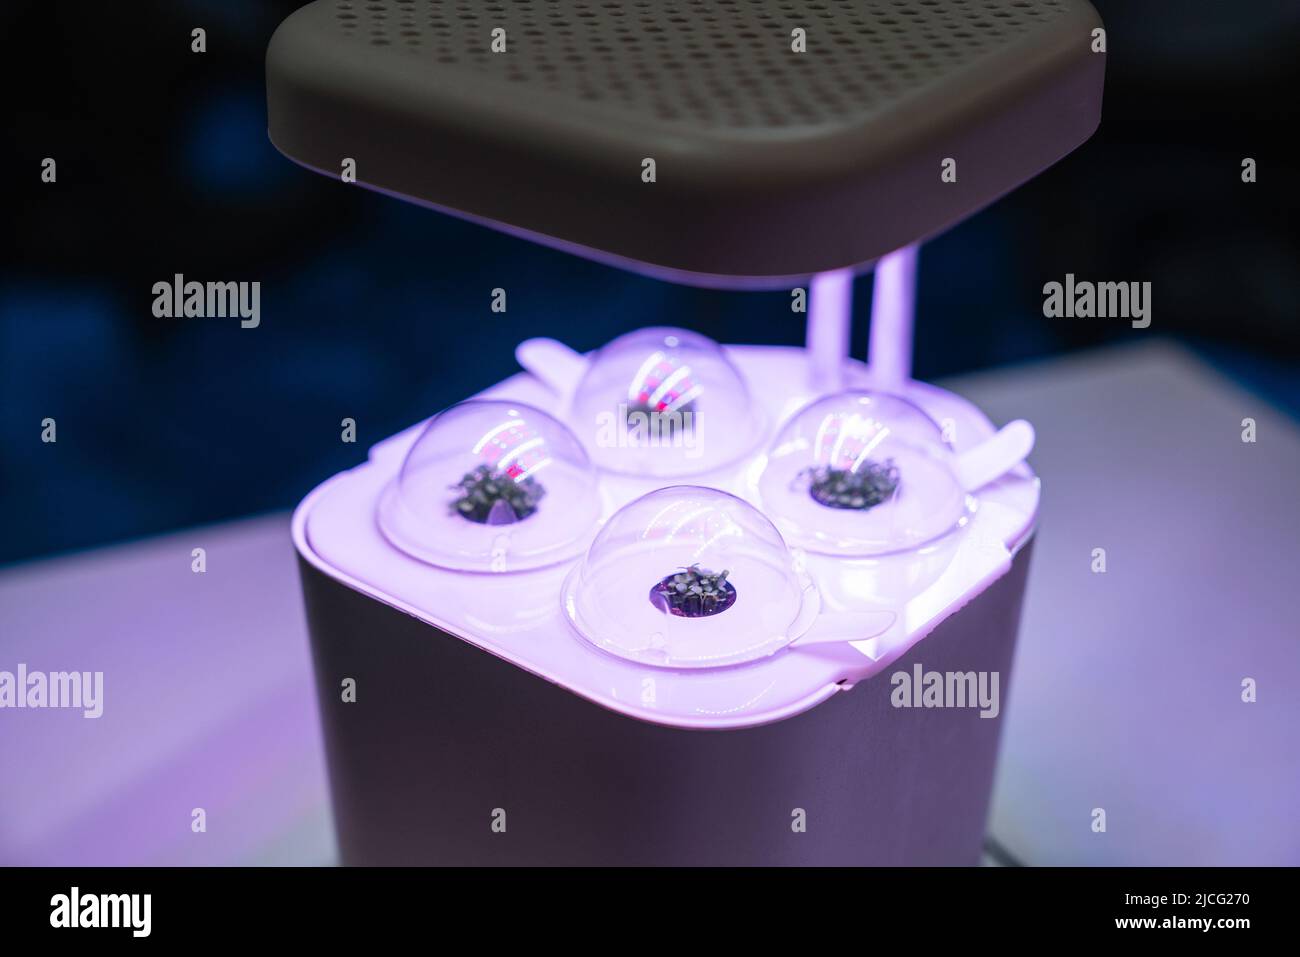 Appareil pour la culture de micro-verts à l'aide de lampes à LED et d'aquaponics Banque D'Images